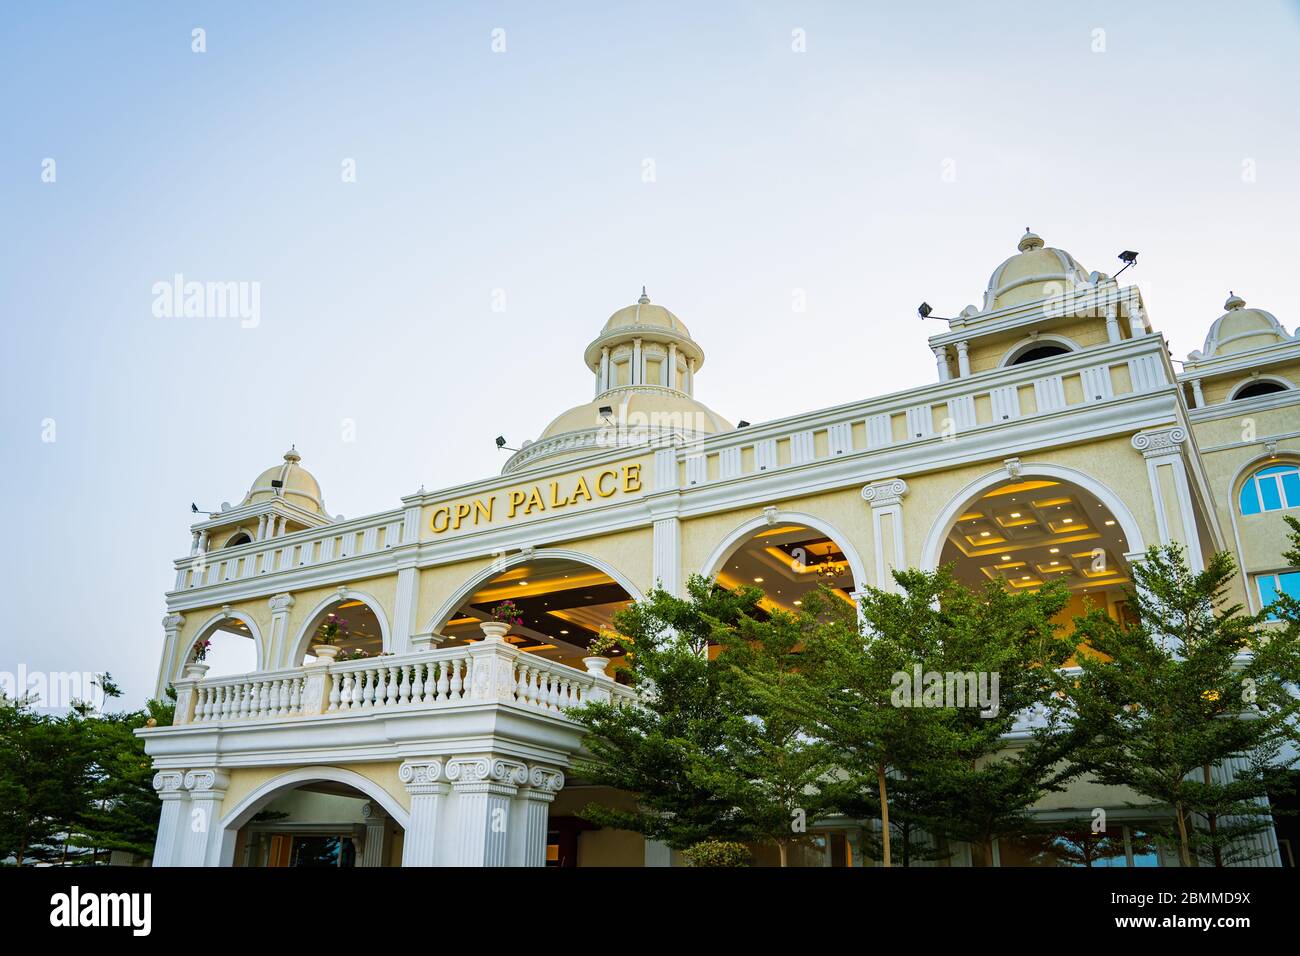 GPN Palace ist ein berühmter Luxus-Veranstaltungsort, der große Veranstaltungen wie eine Hochzeit veranstaltet. Stockfoto